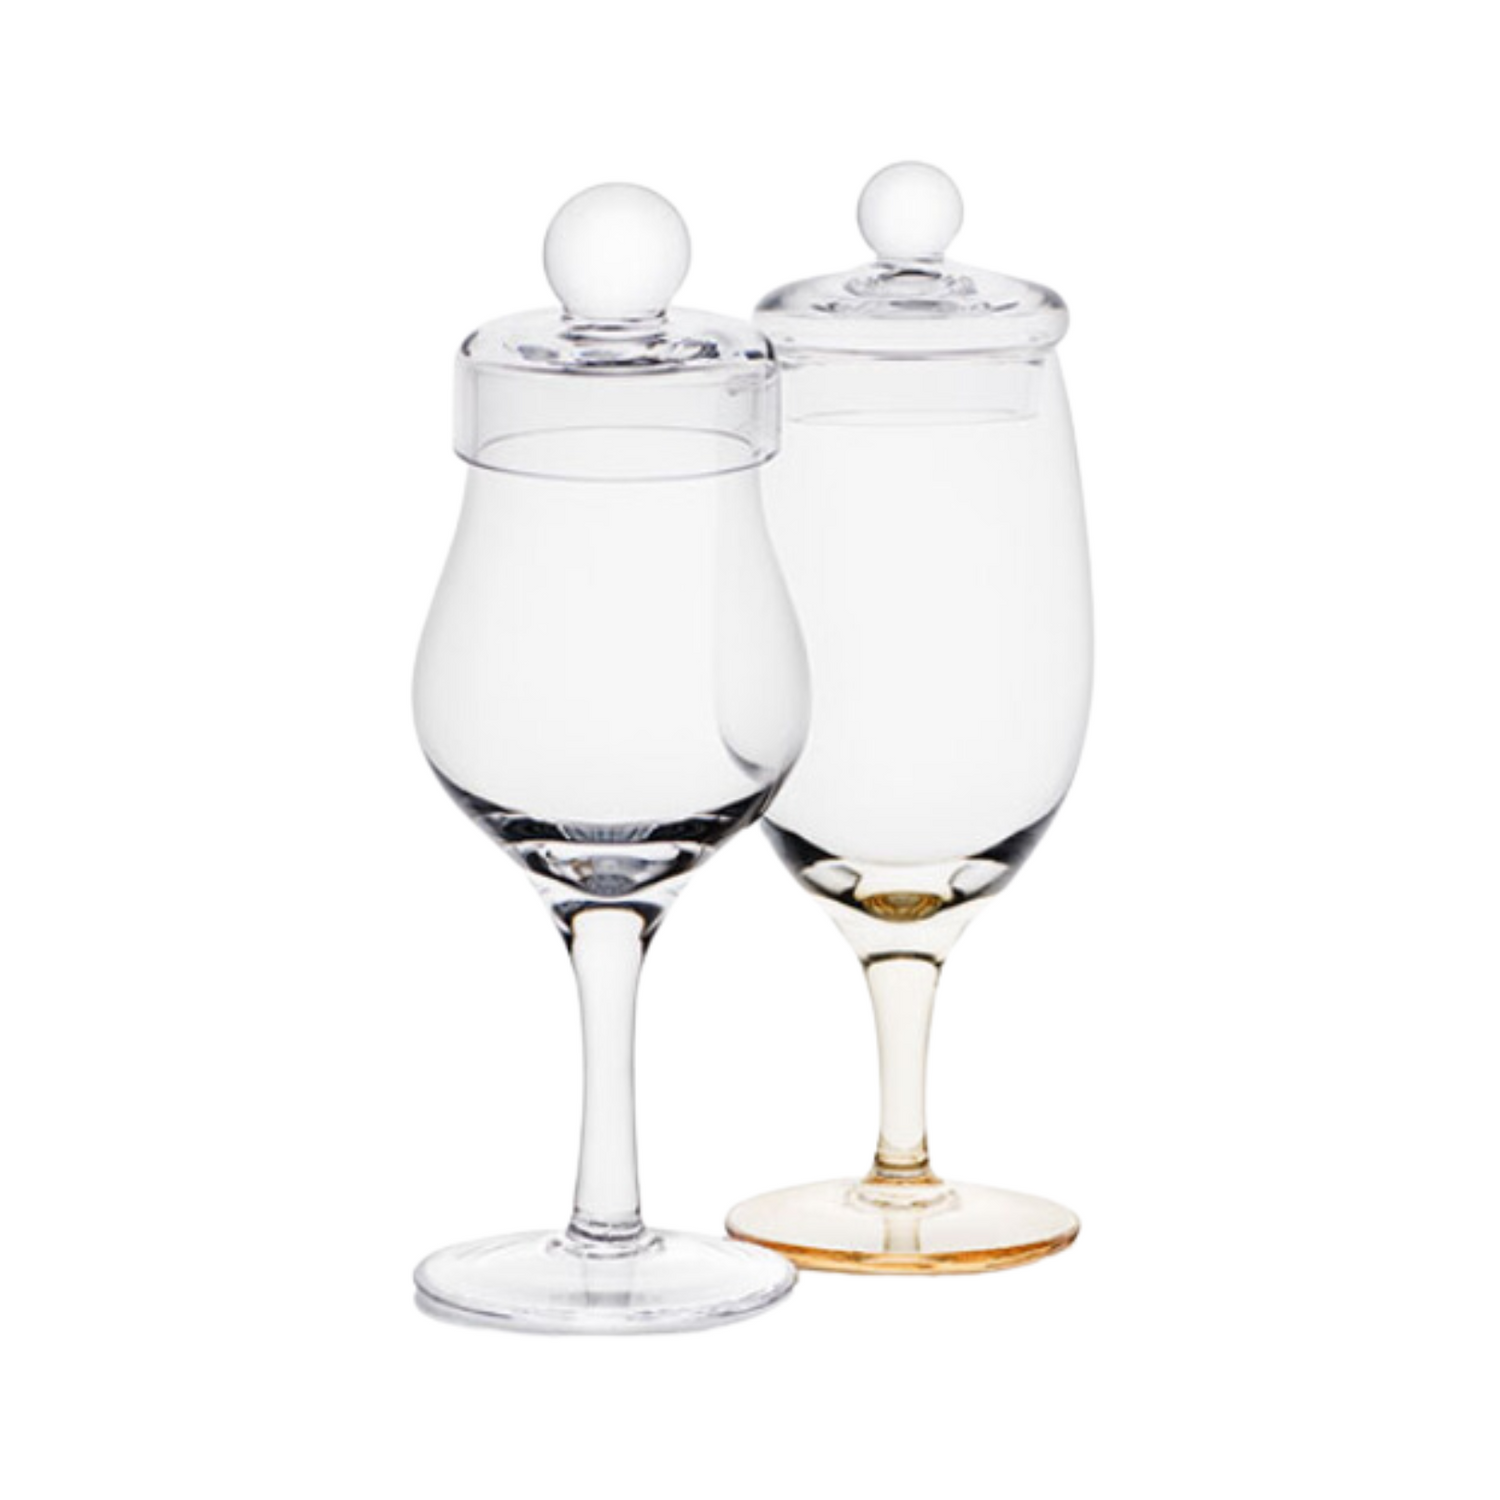 Amber Handmade Whisky Nosing & Tasting Box - Set of 2 Glasses